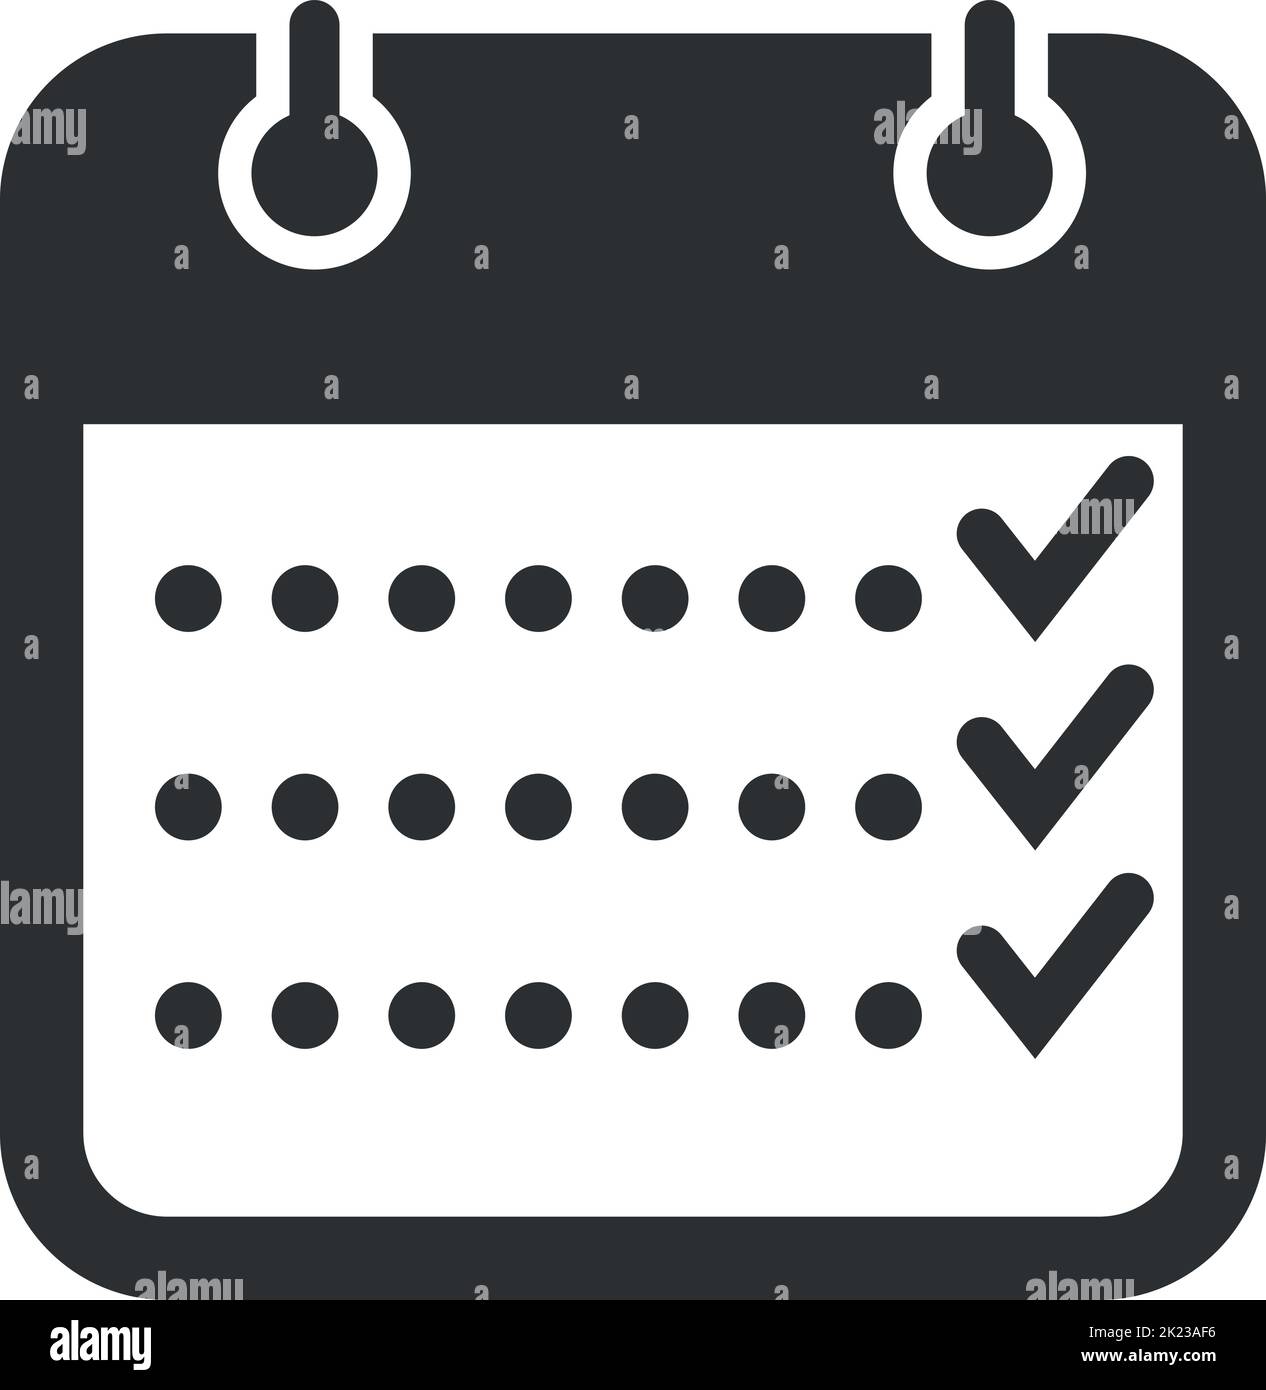 Calendar task checklist black icon. Schedule symbol Stock Vector